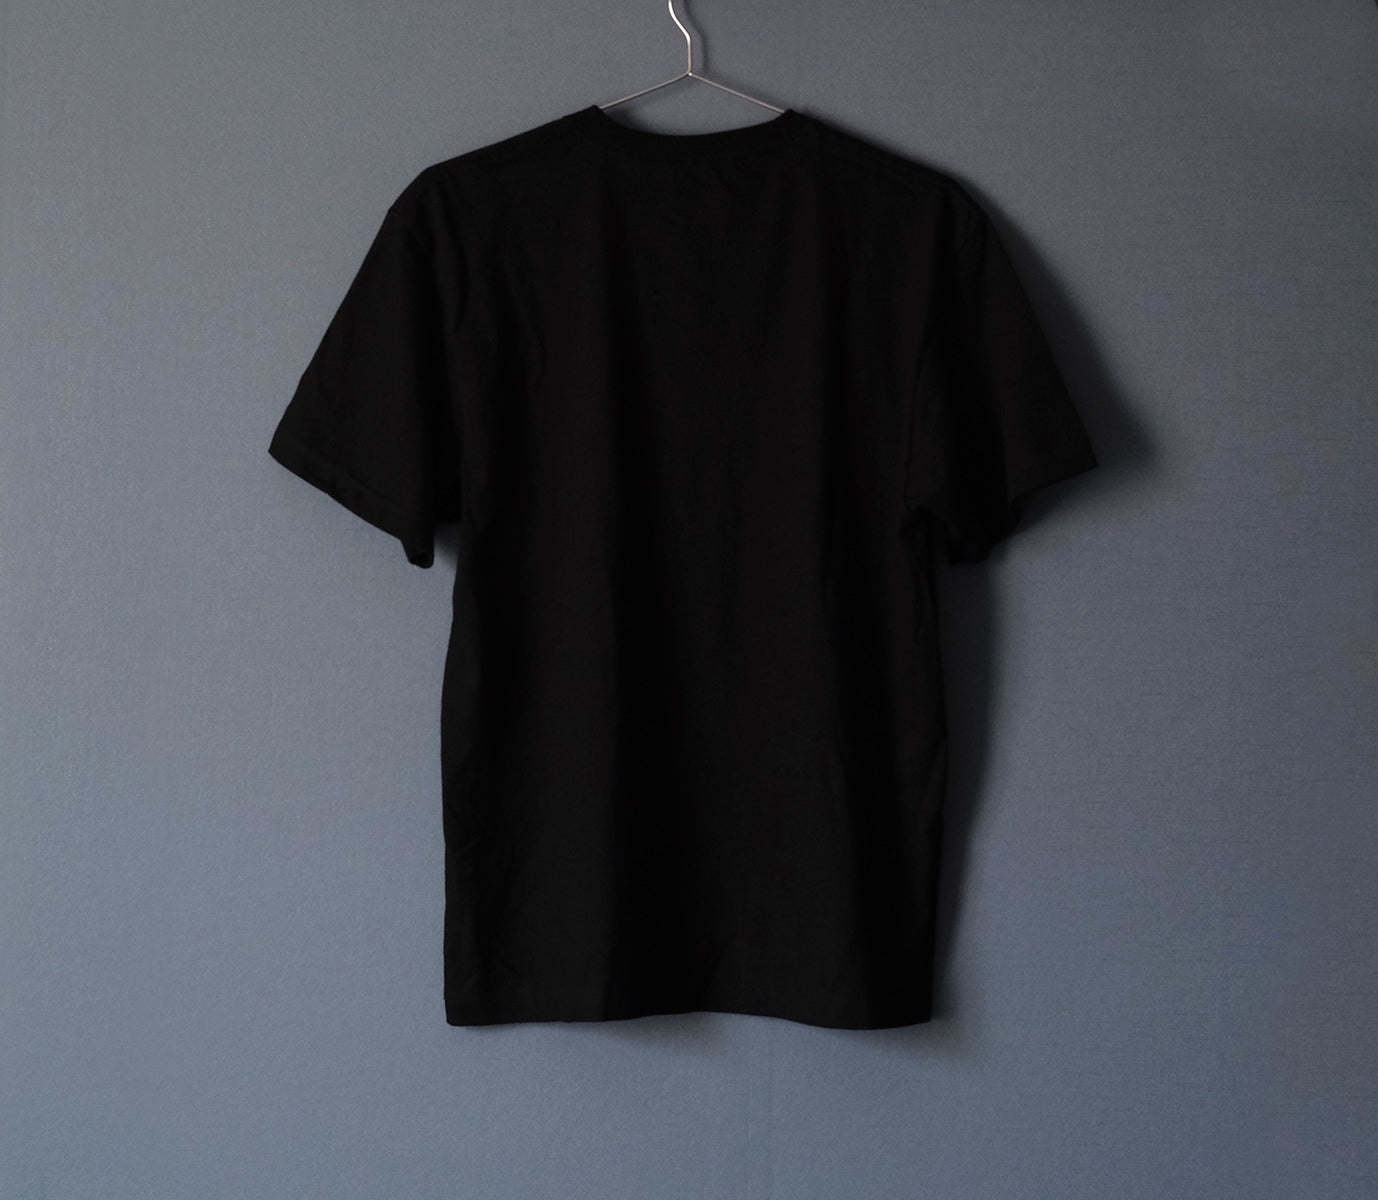 月の事柄が描かれた "RIDE THE MOON" Tシャツ （black）男女兼用